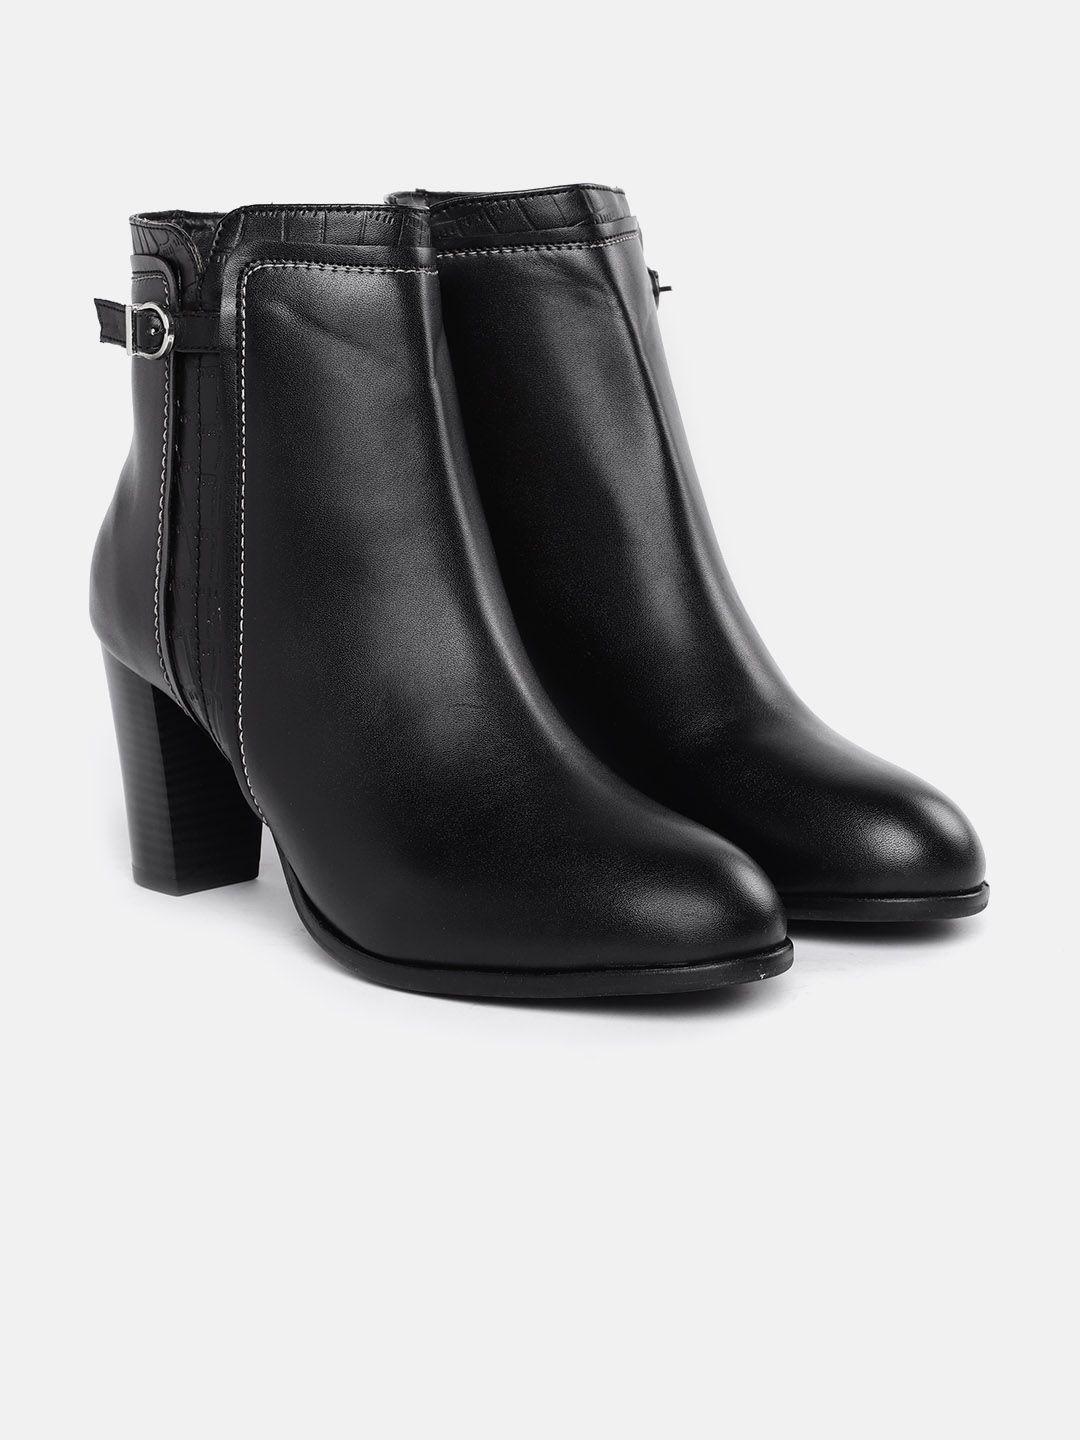 corsica women black solid with croc textured detail mid-top block heel regular boots